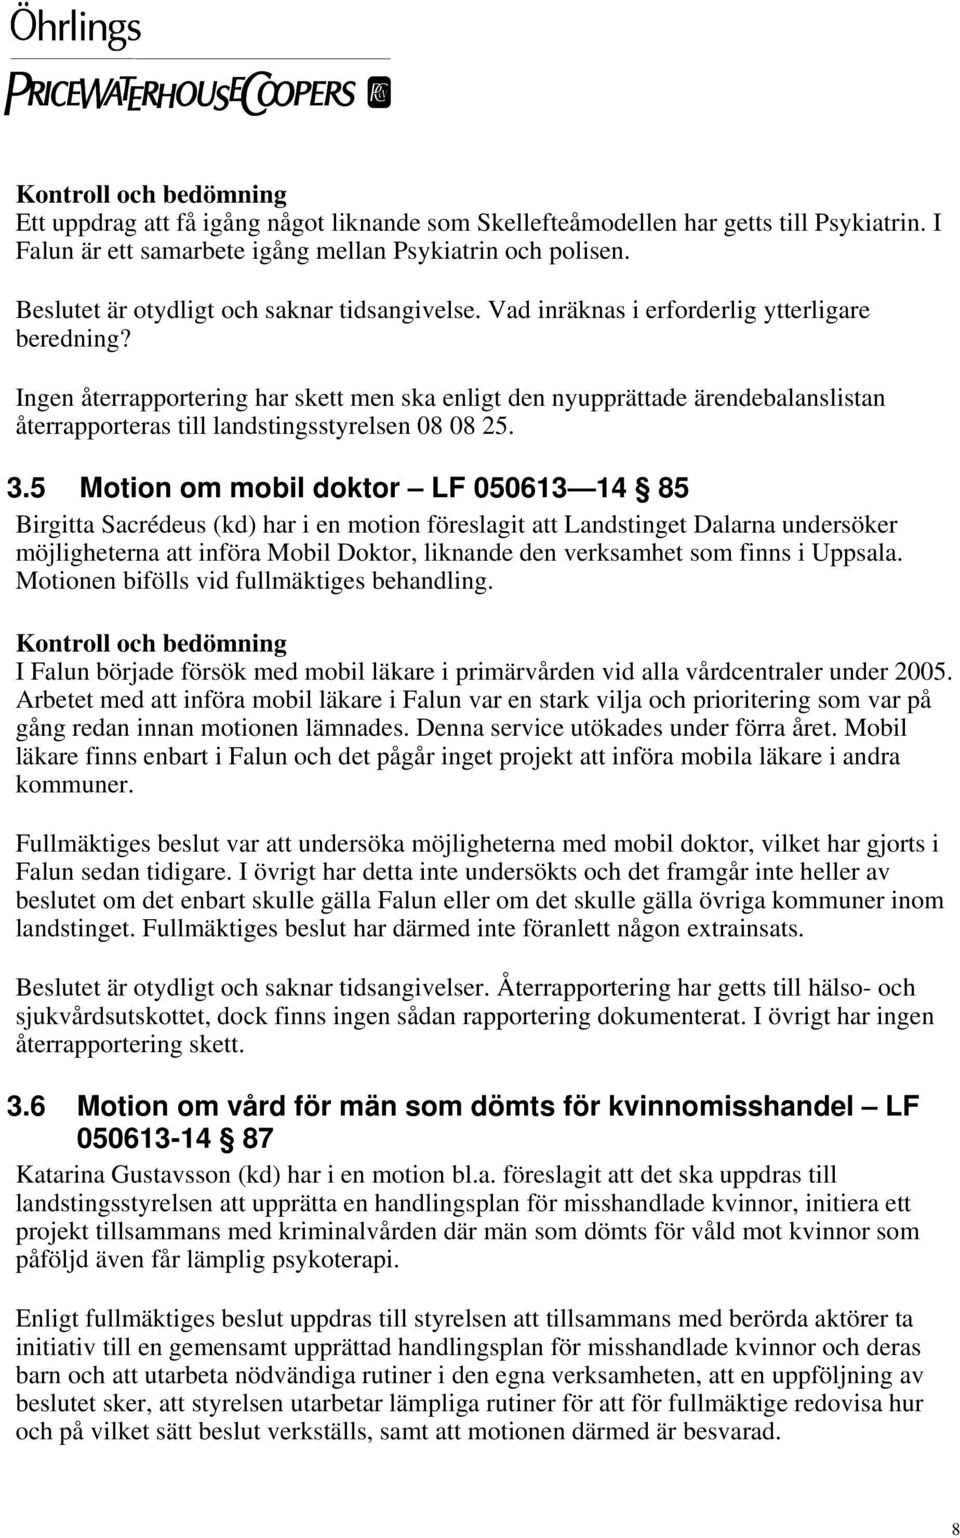 5 Motion om mobil doktor LF 050613 14 85 Birgitta Sacrédeus (kd) har i en motion föreslagit att Landstinget Dalarna undersöker möjligheterna att införa Mobil Doktor, liknande den verksamhet som finns